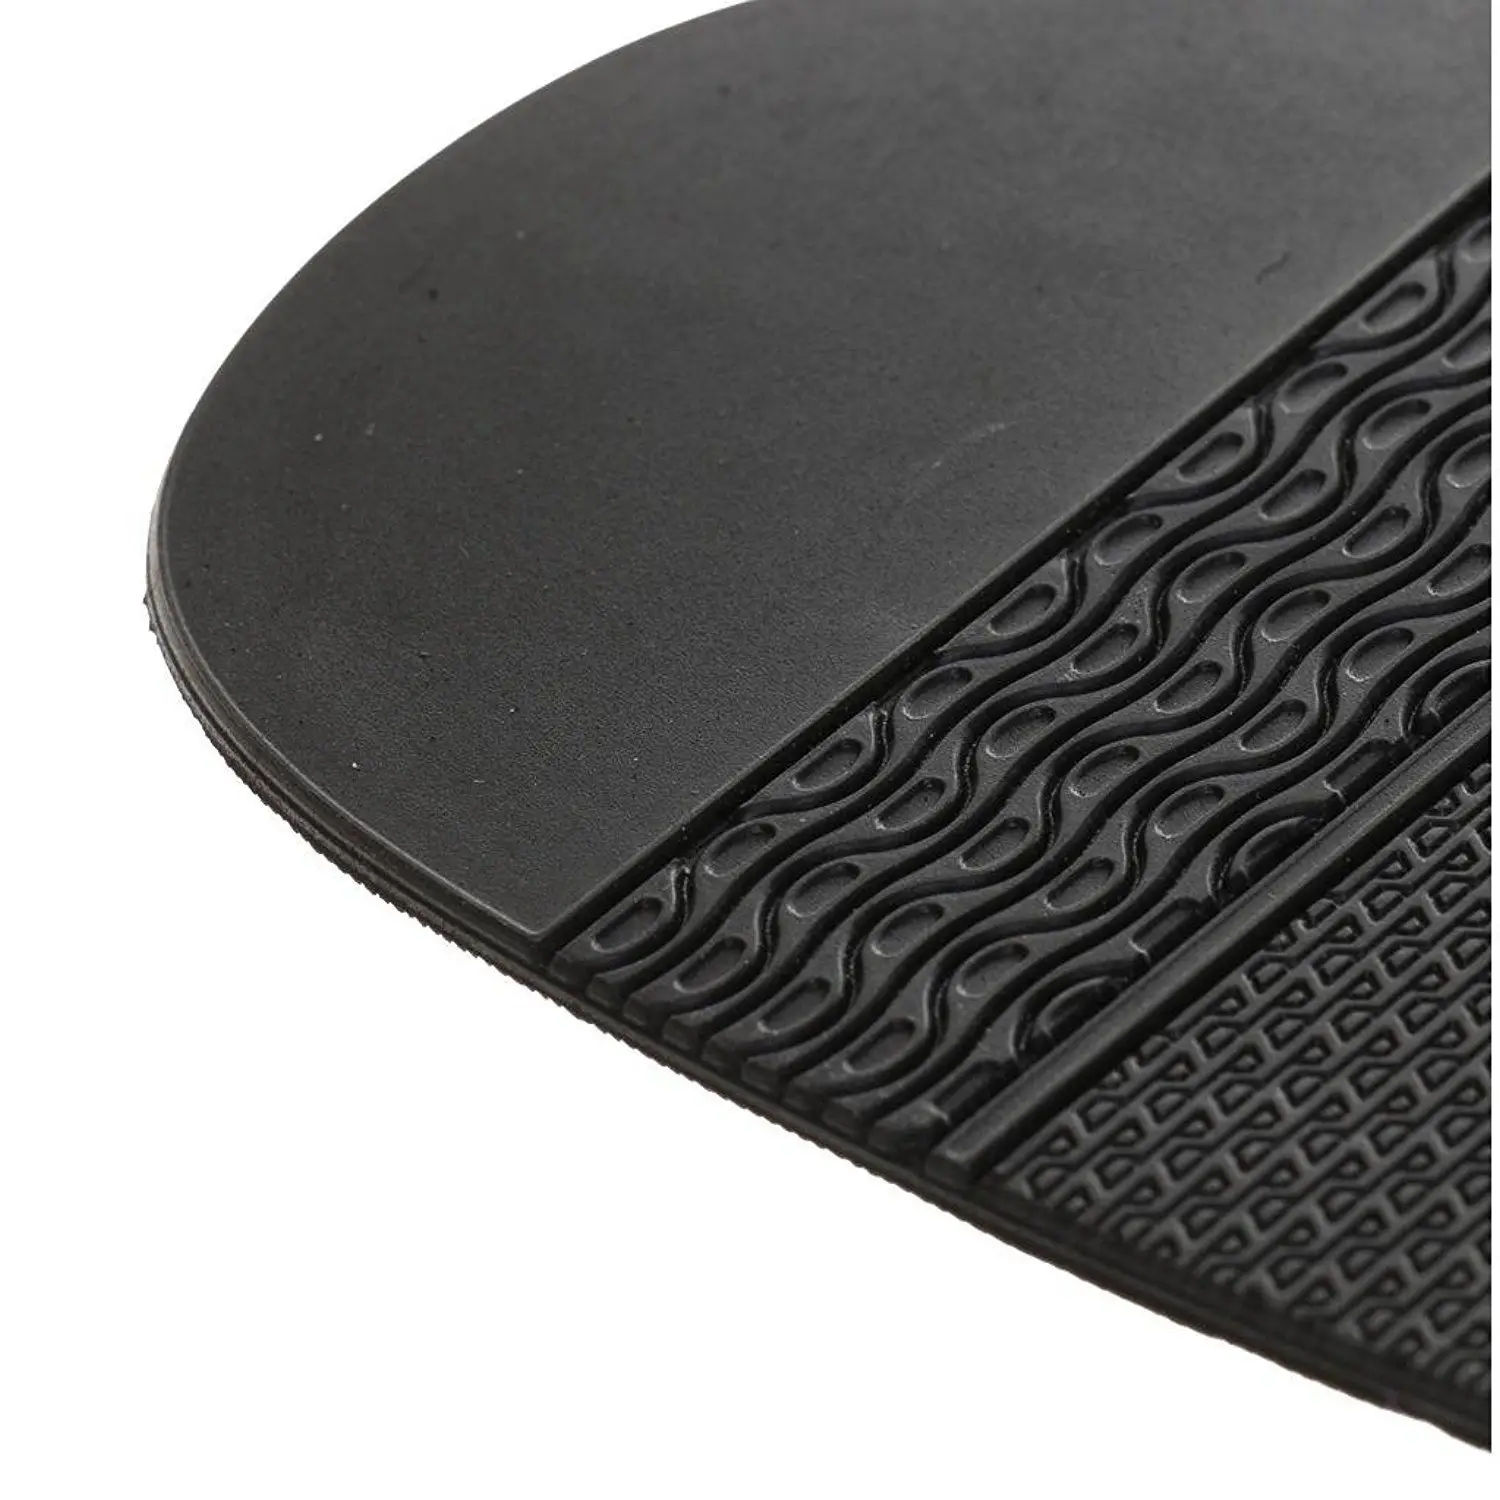 DCOS 1 пара обуви для переднего отдела стопы резиновый пол-Обувь На сплошной подошве для ремонта, ремесло, 2 мм